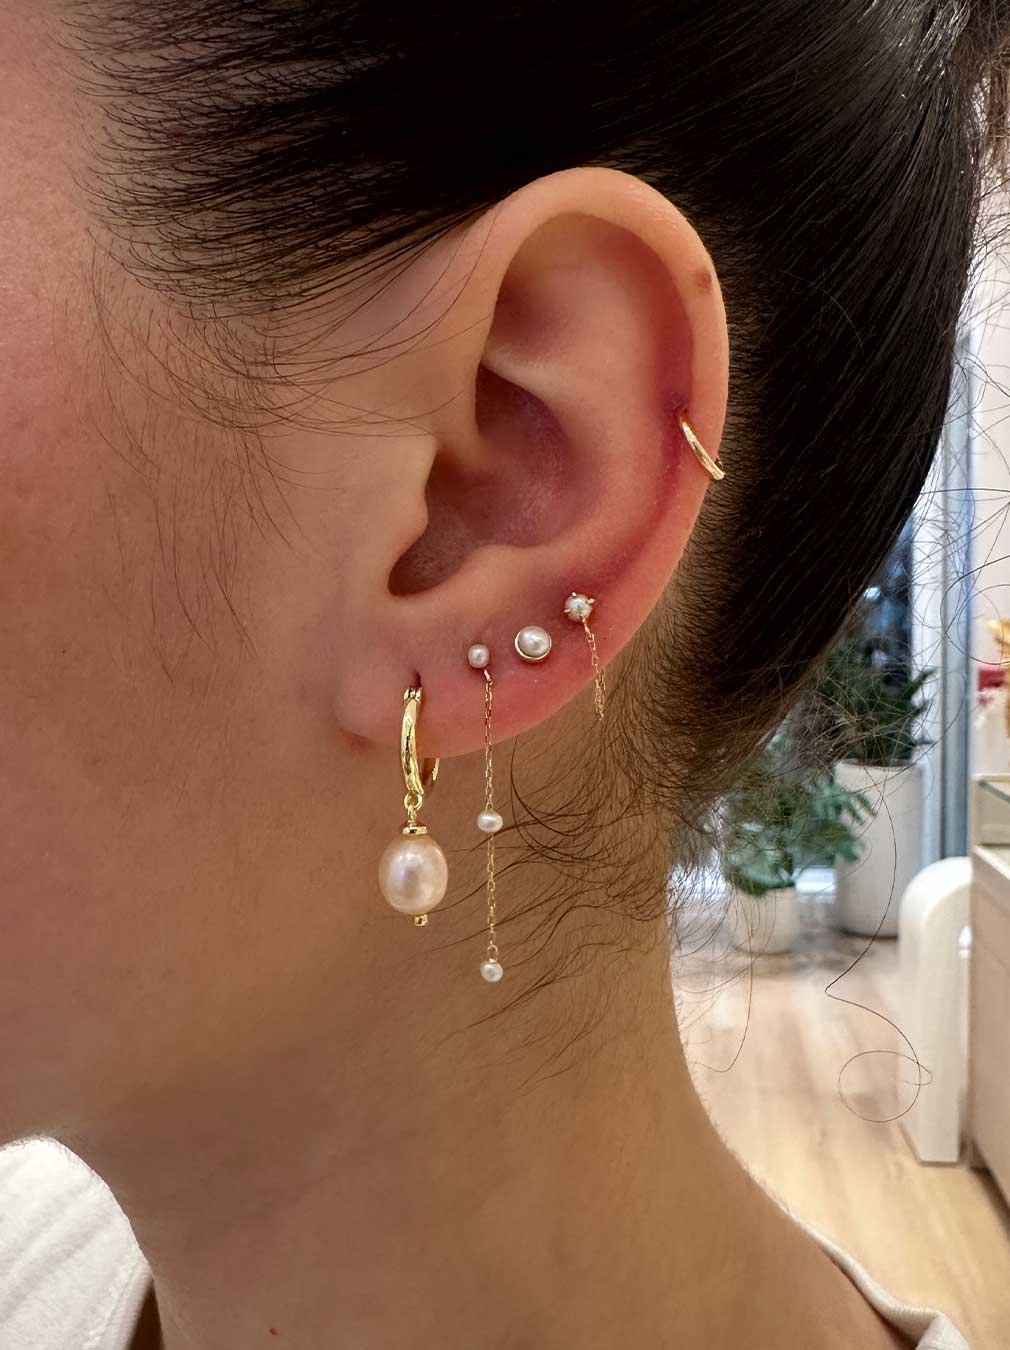 Woman wearing various pearl earrings